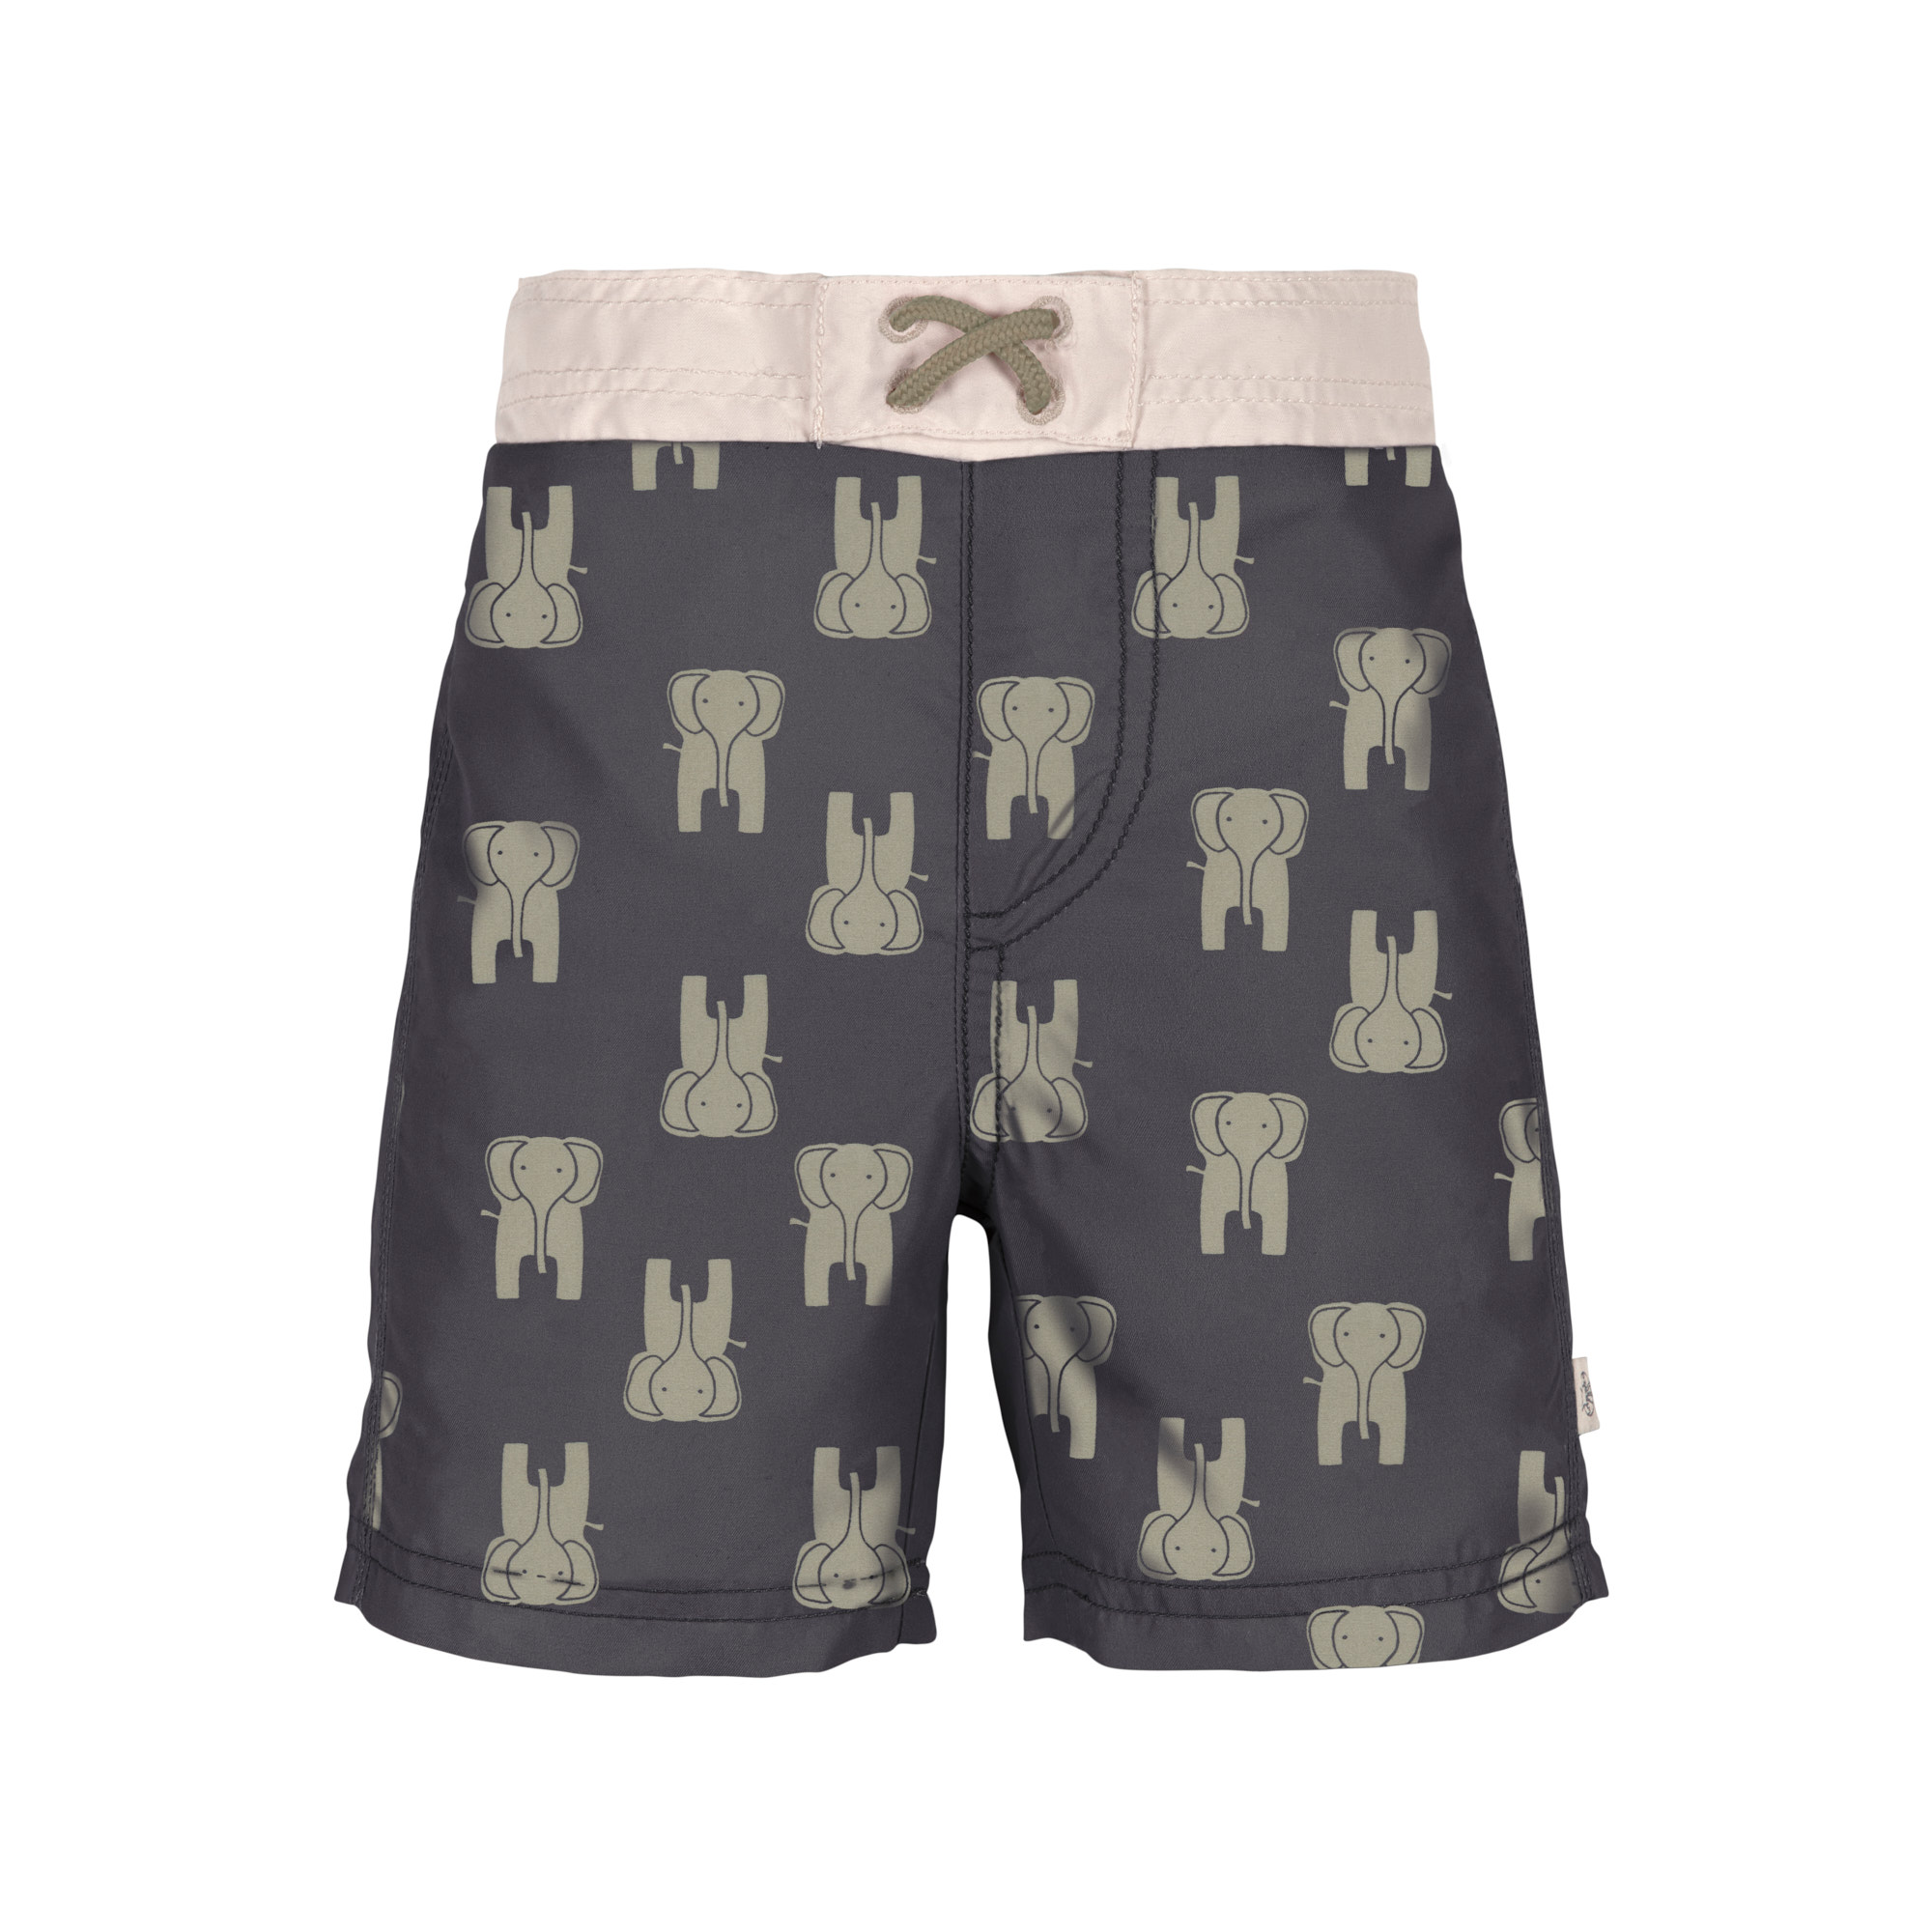 Lässig - UV board short for baby boys - Elephant - Dark grey